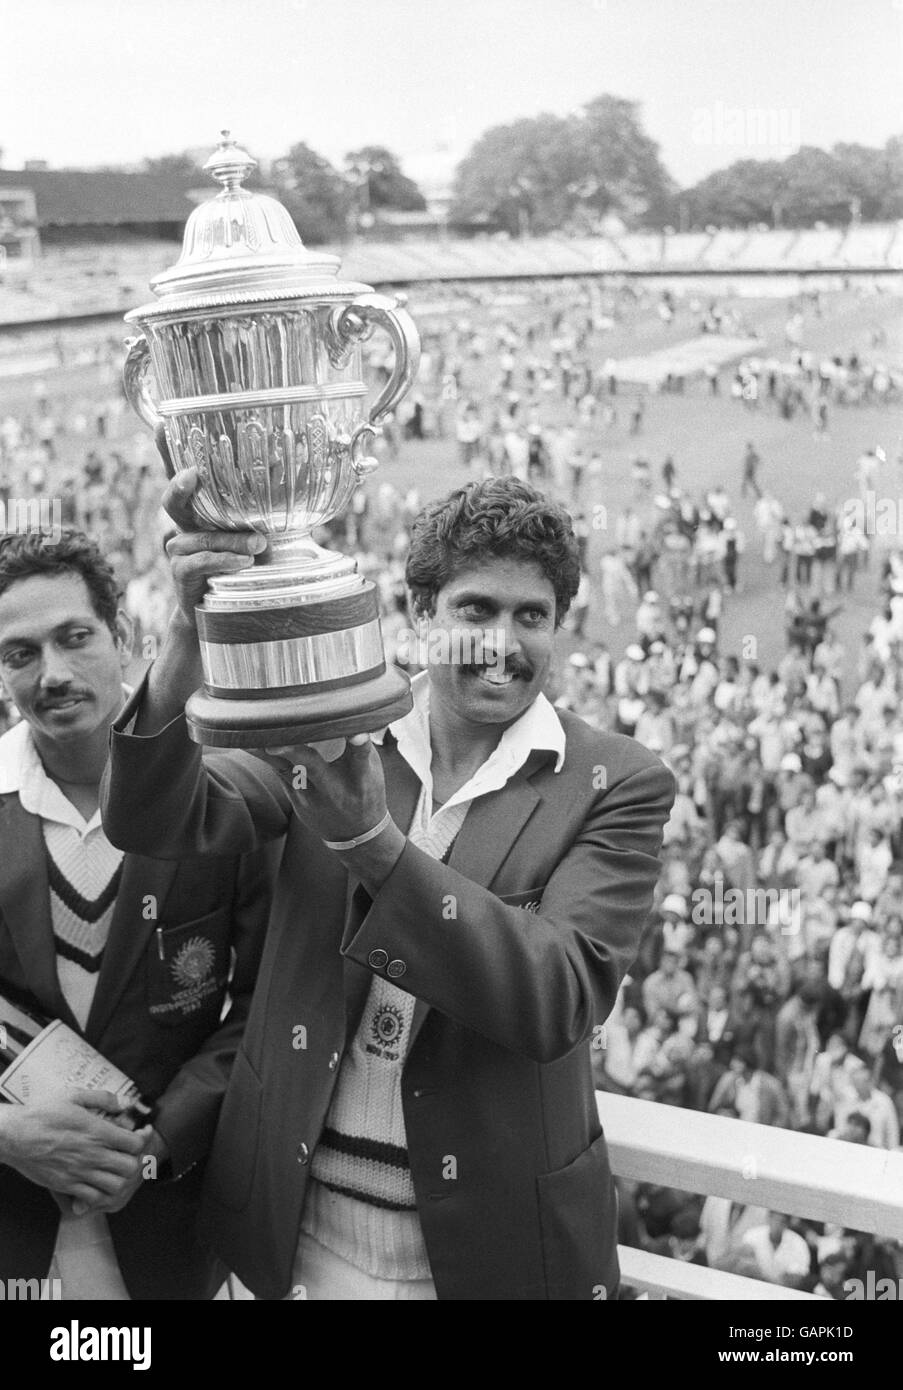 Cricket - coupe du monde Prudential - finale - Inde / Antilles - Lord's.Kapil Dev, capitaine de l'équipe de cricket de la coupe du monde de Prudential en Inde, remporte le trophée en douceur après avoir battu les Antilles. Banque D'Images